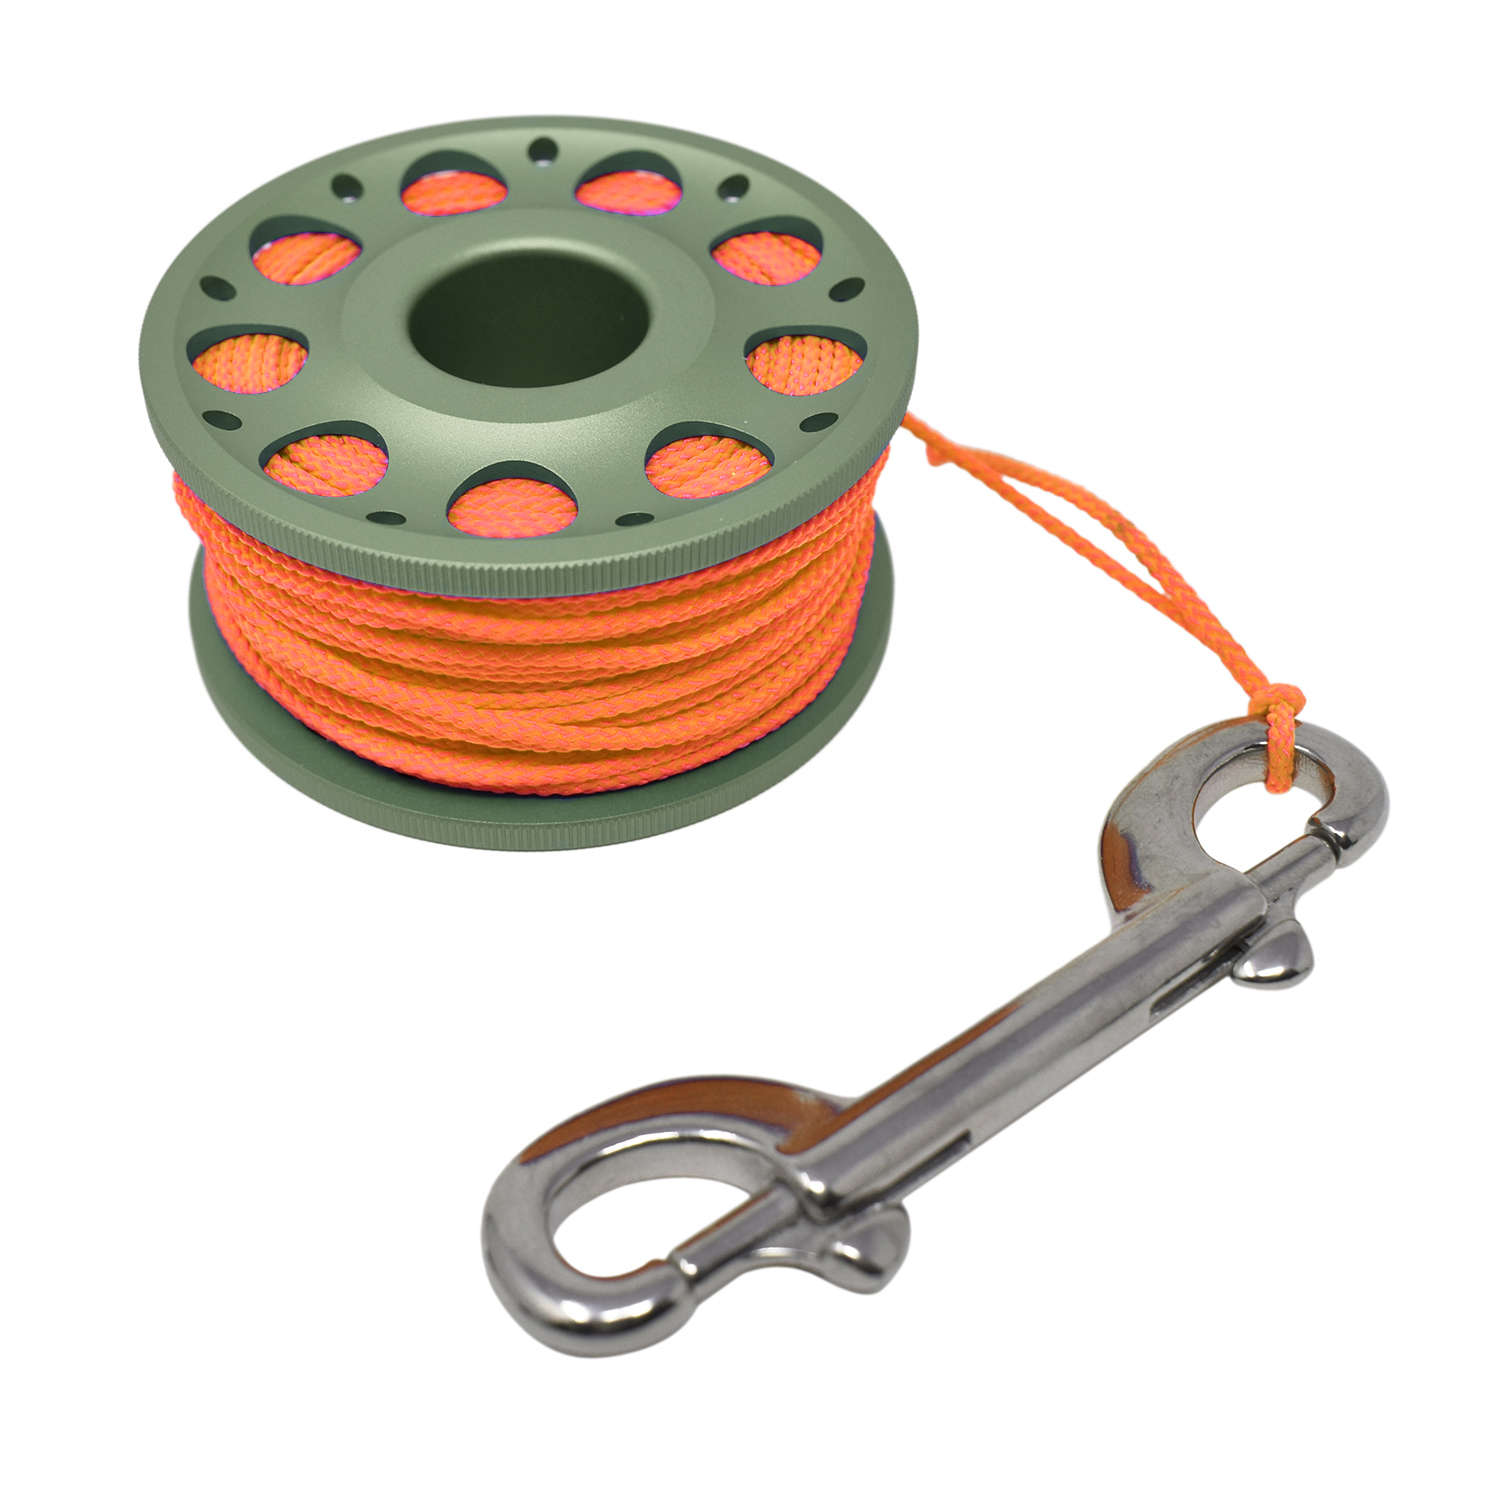 Aluminum Finger Spool 100ft Dive Reel w/ Spinning Holder, Green/Orange - image 3 of 4